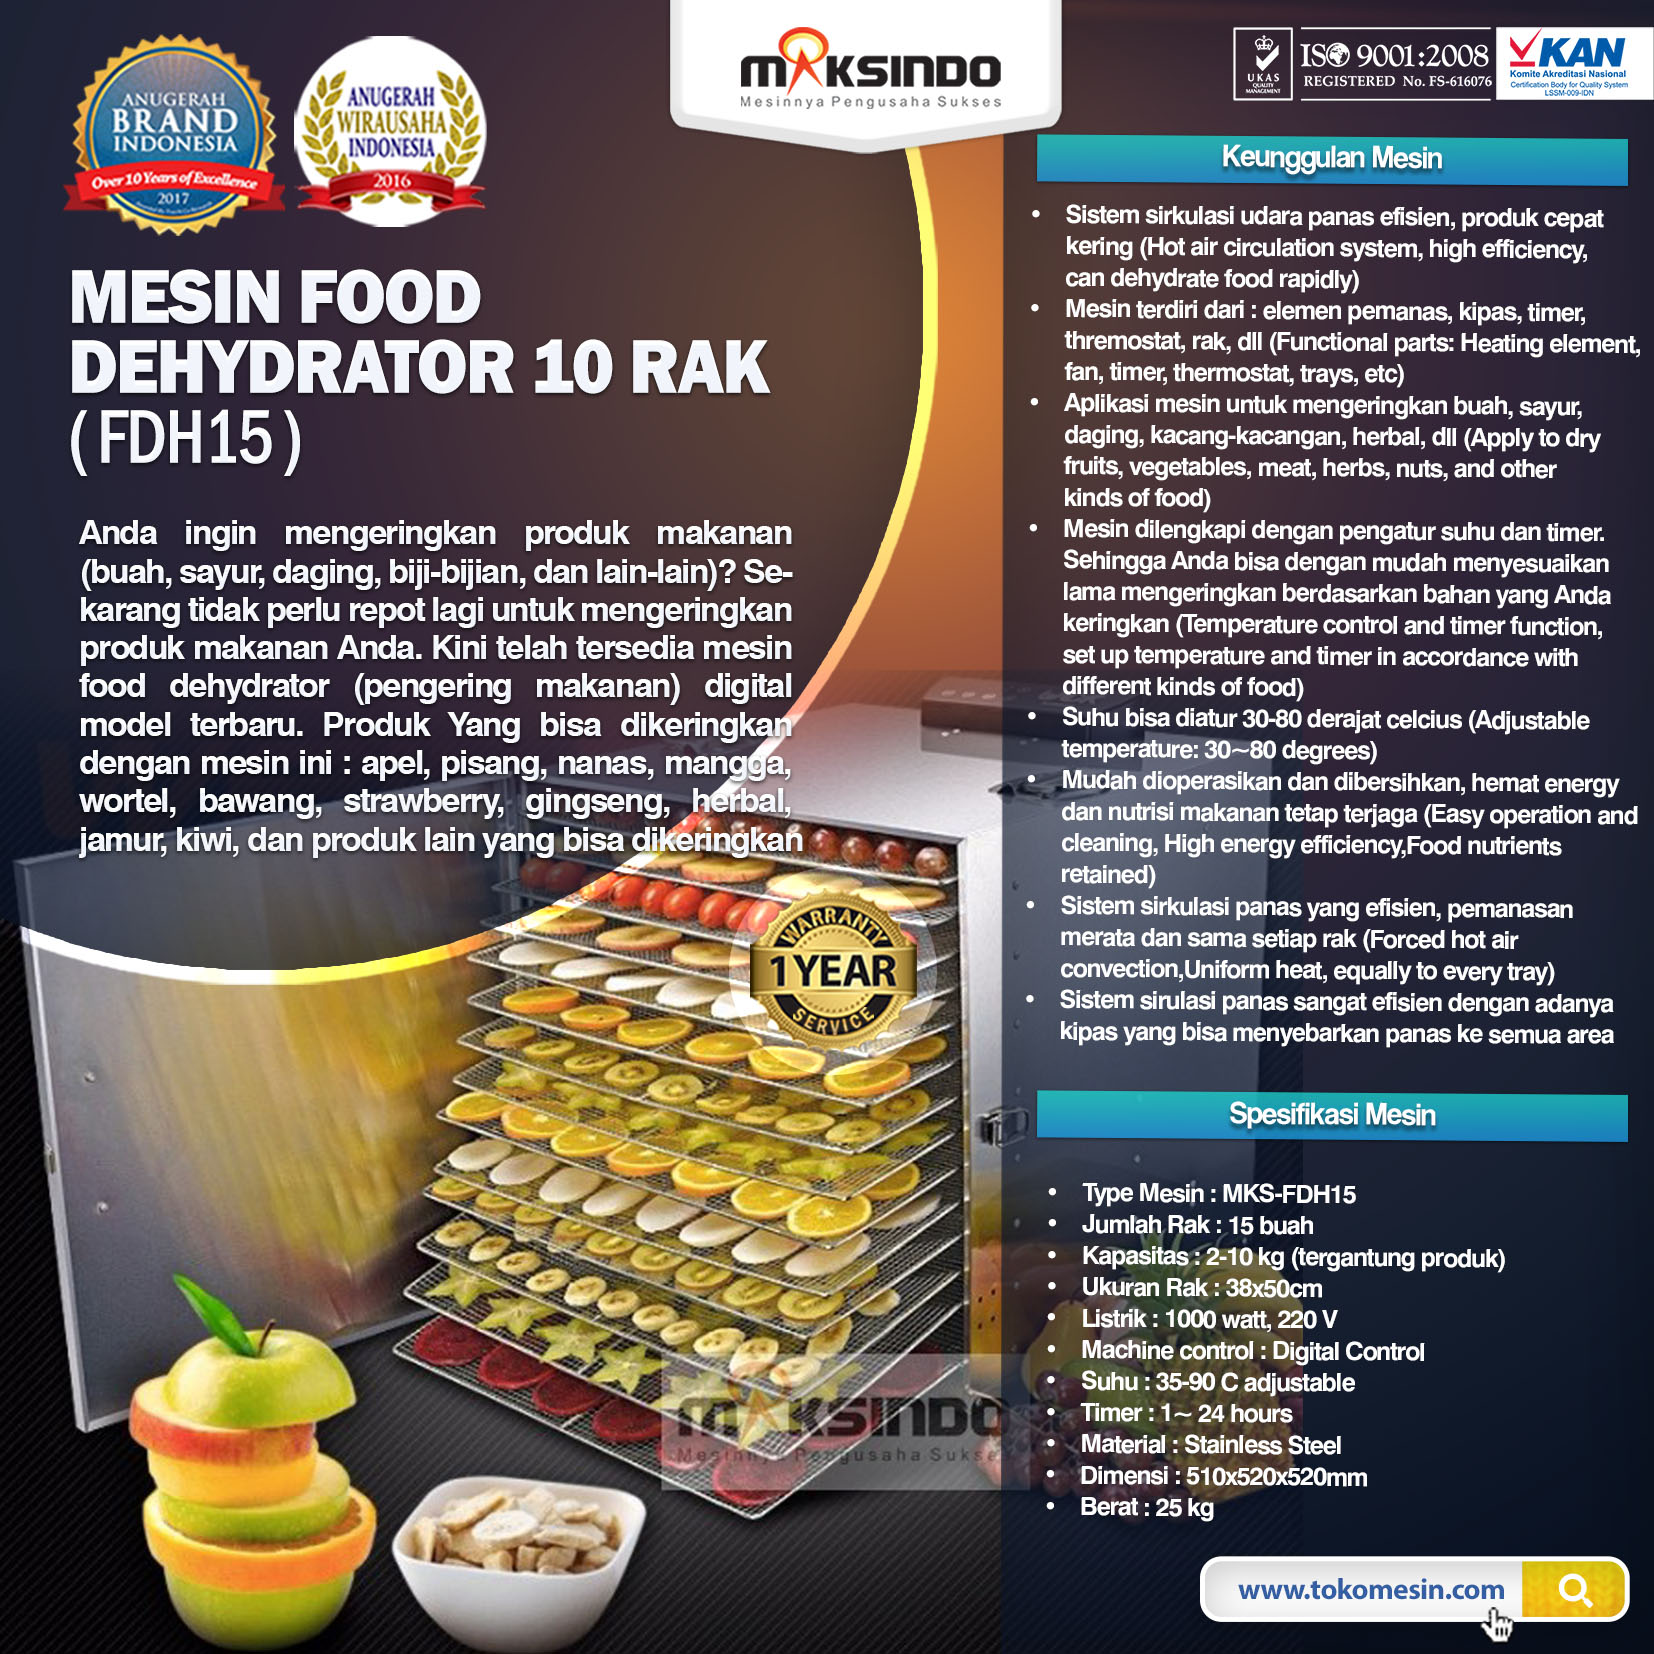 Jual Mesin Food Dehydrator 15 Rak (FDH15) di Blitar